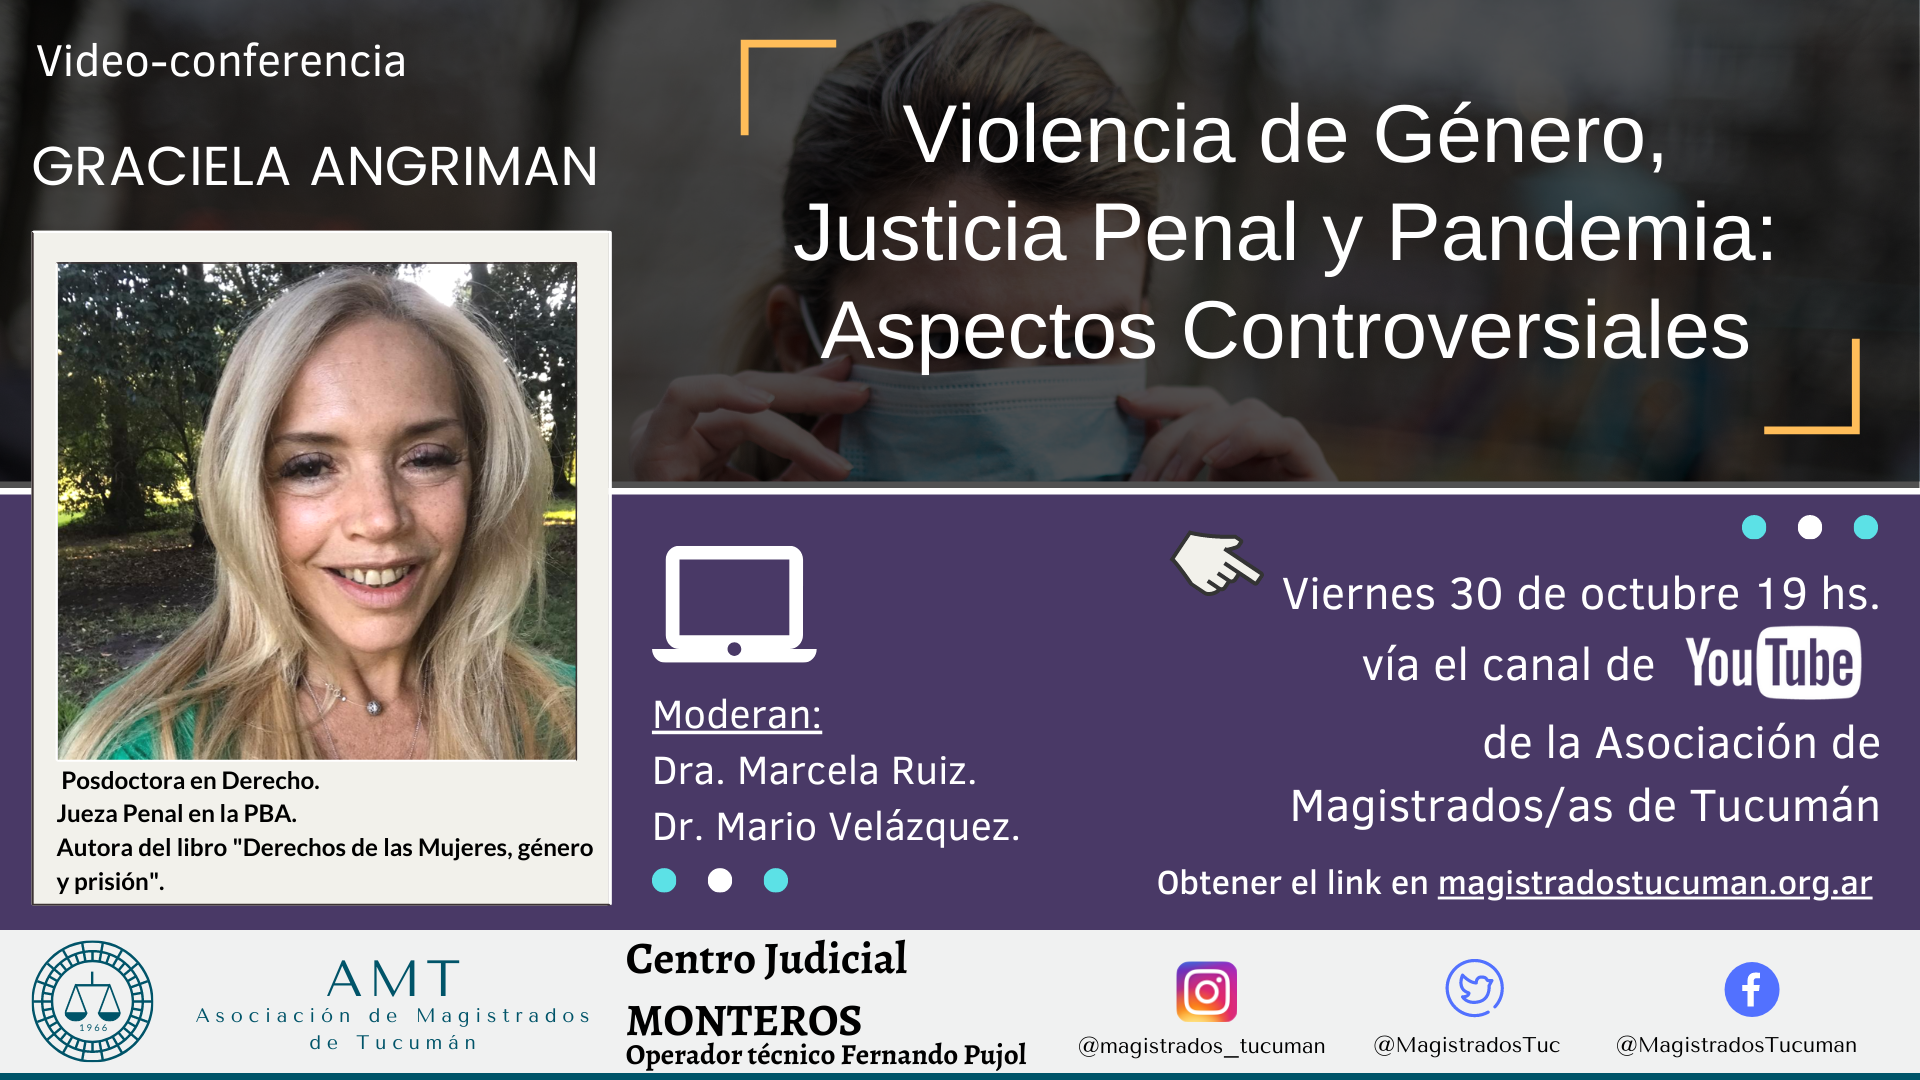 Vuelva a ver la conferencia de Graciela Angriman «Violencia de Género, Justicia Penal y Pandemia»